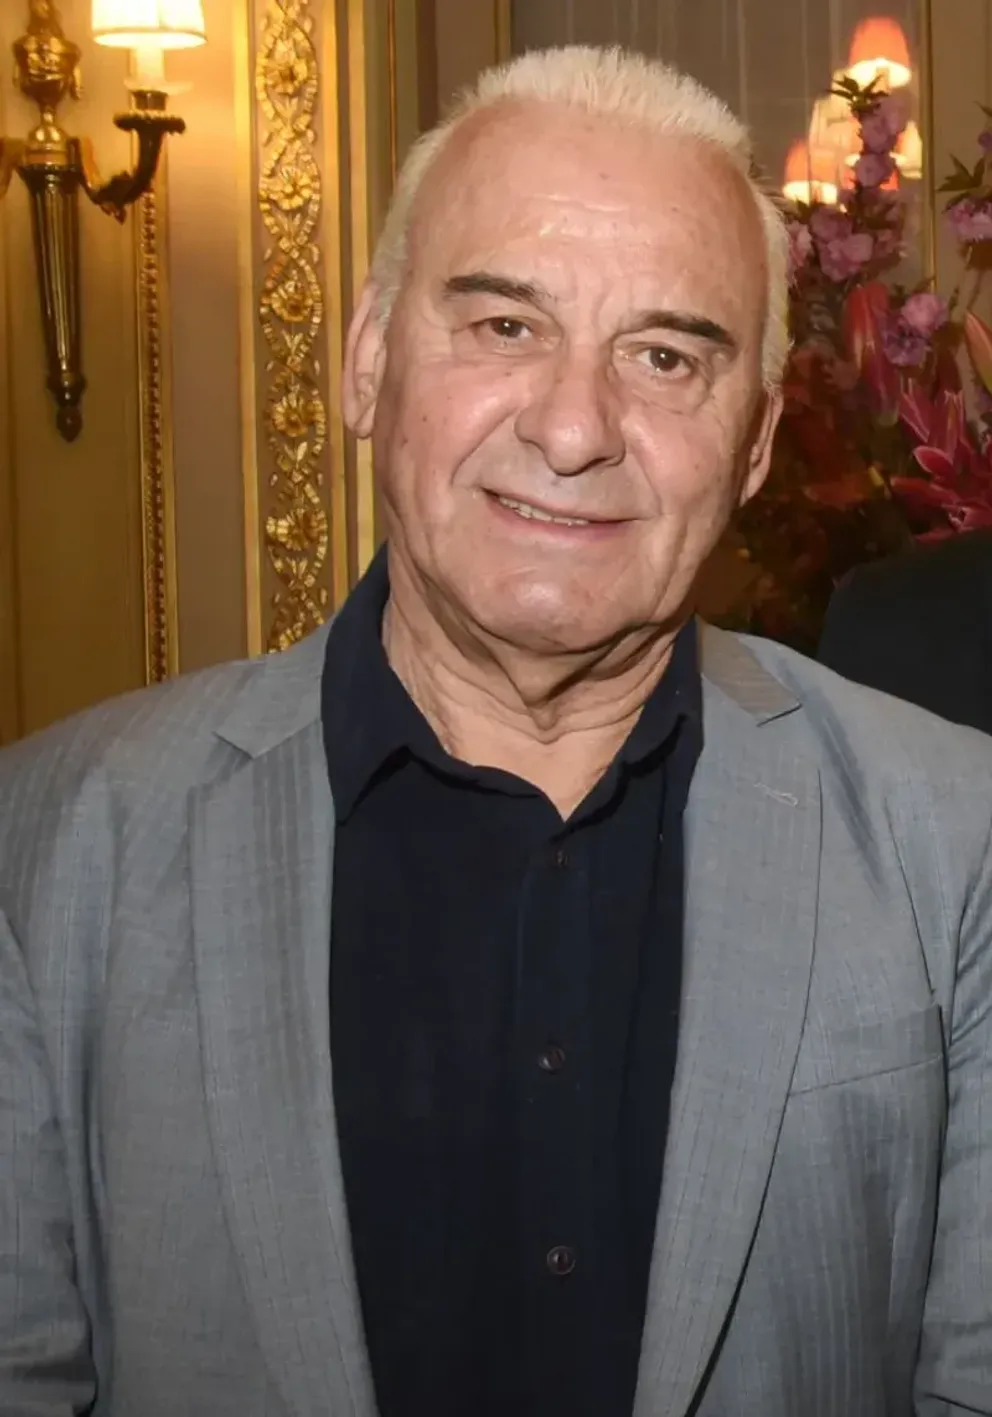 Michel Fugain assiste à "Sardou Regards" Lancement du livre de Bastien Kossek à l'hôtel Raphael le 15 avril 2019 à Paris. | Photo : Getty Images